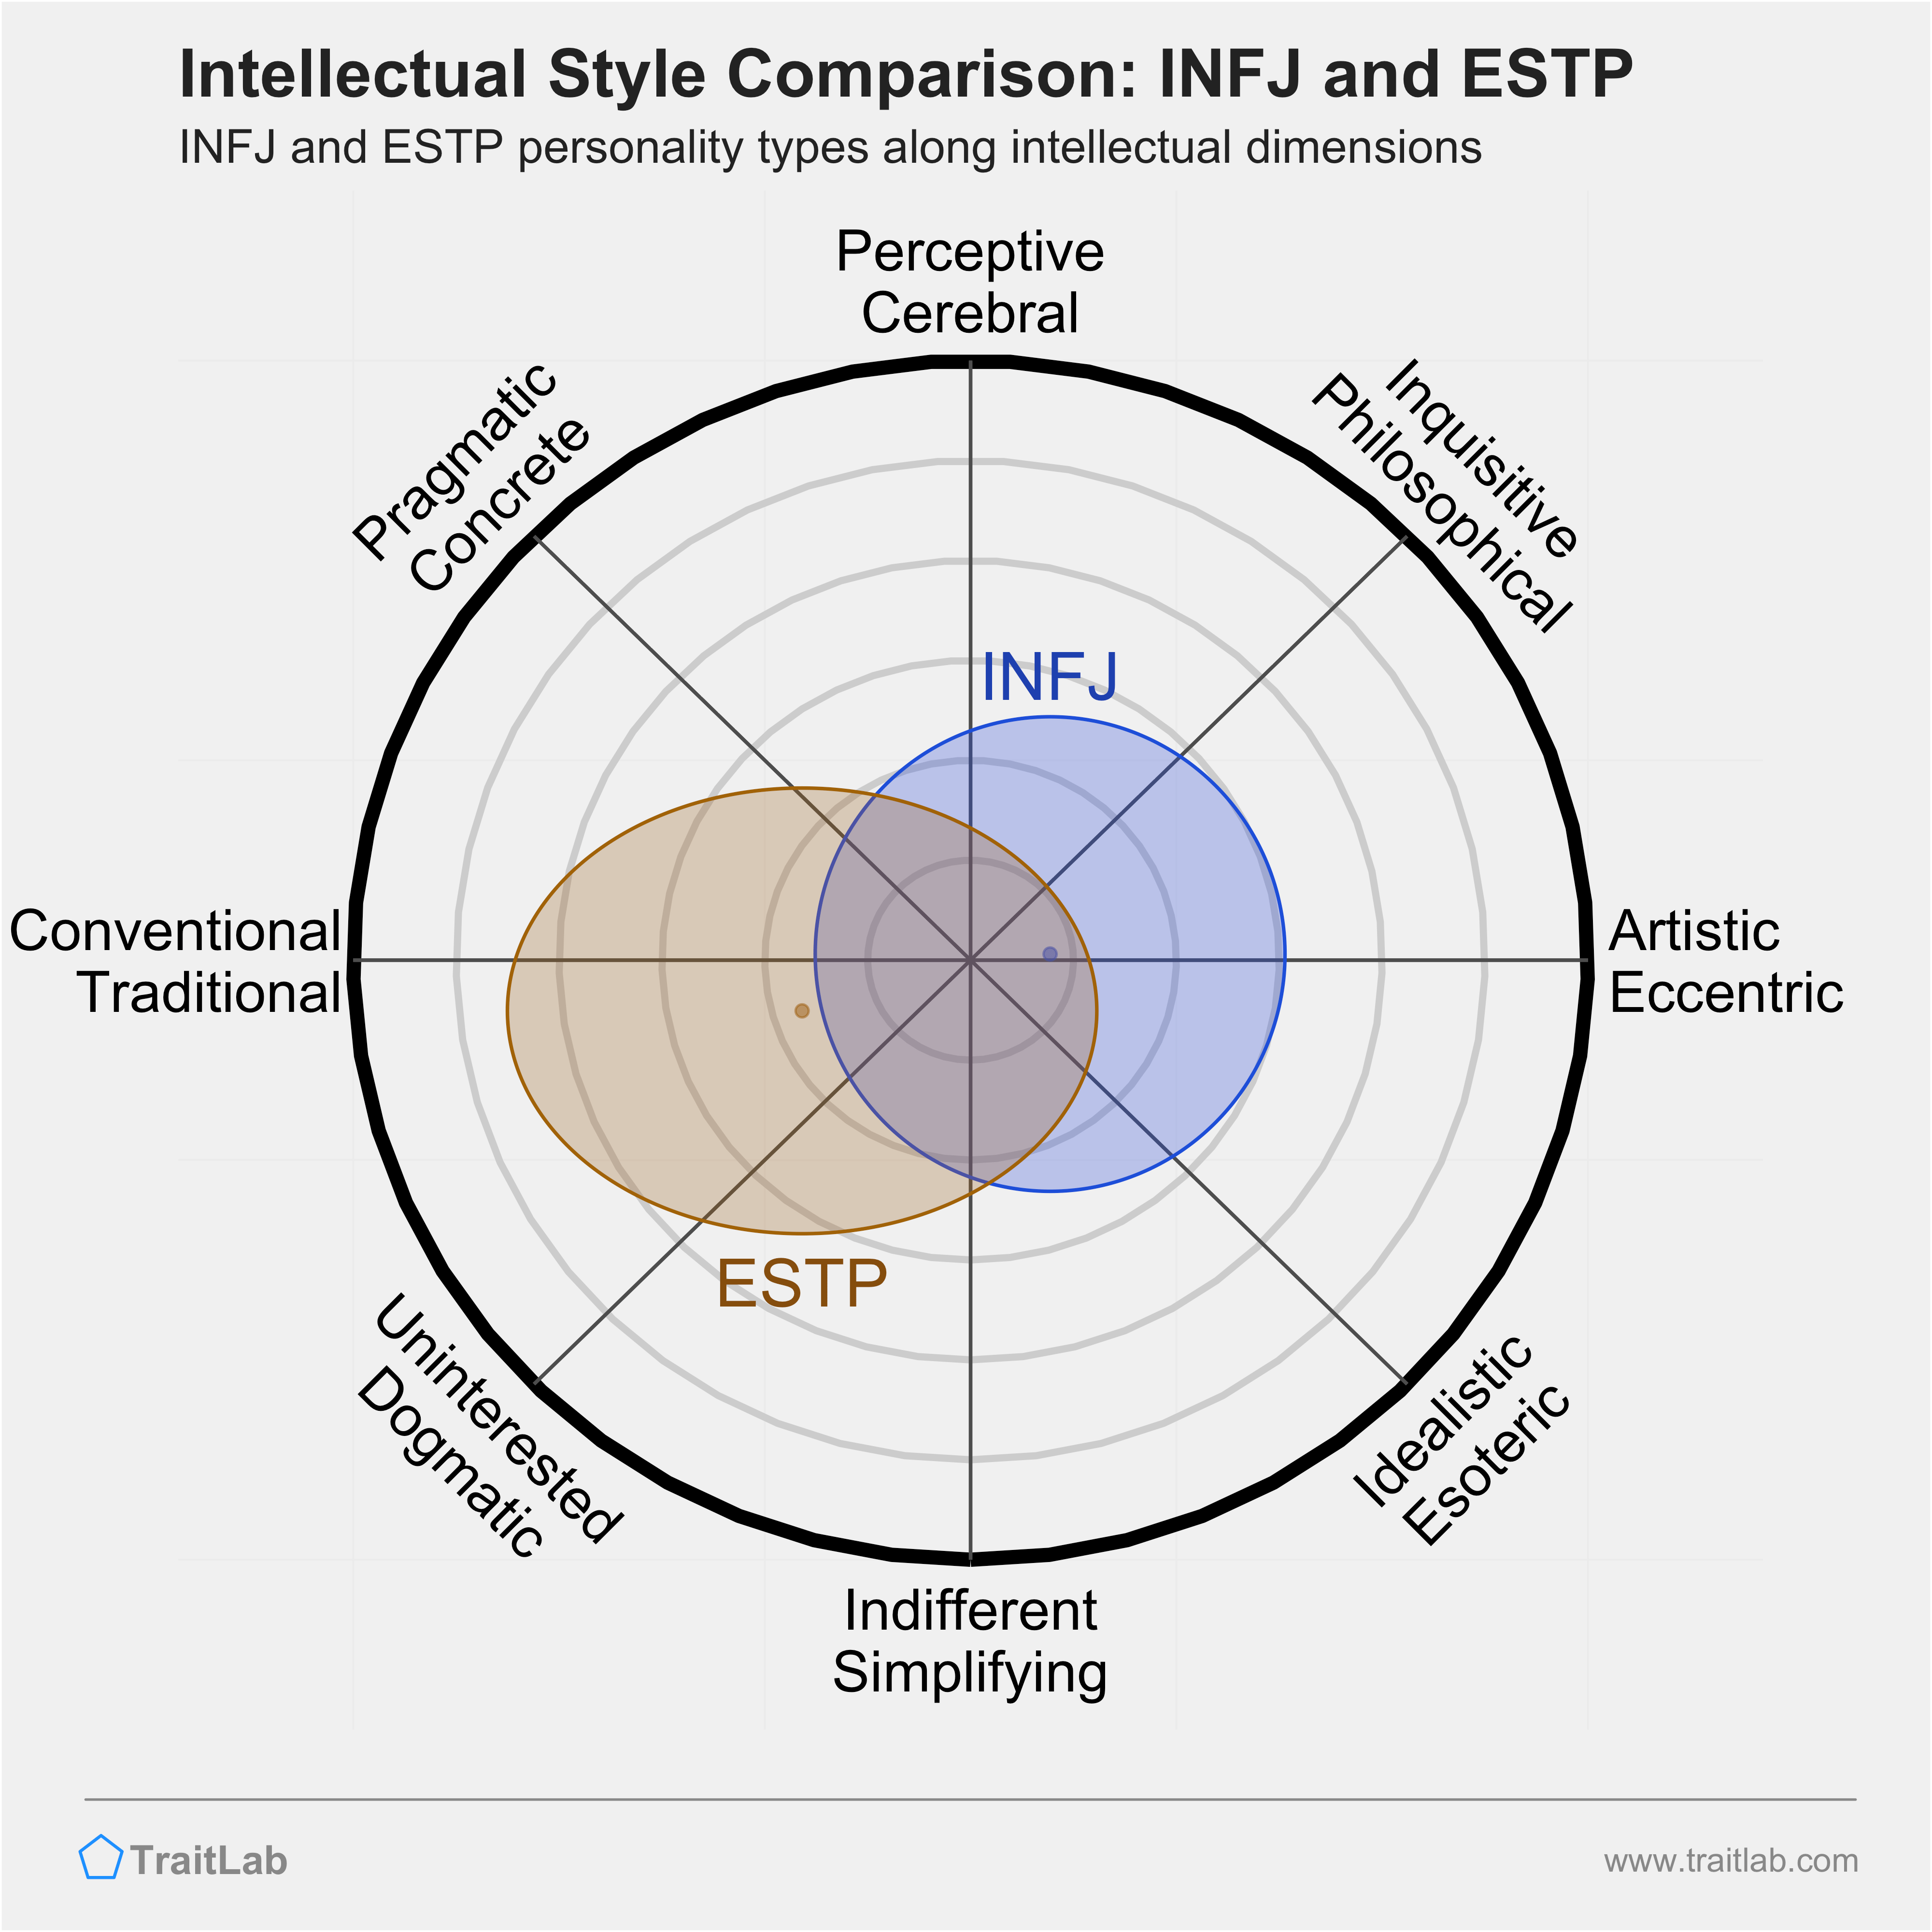 INFJ and ESTP comparison across intellectual dimensions